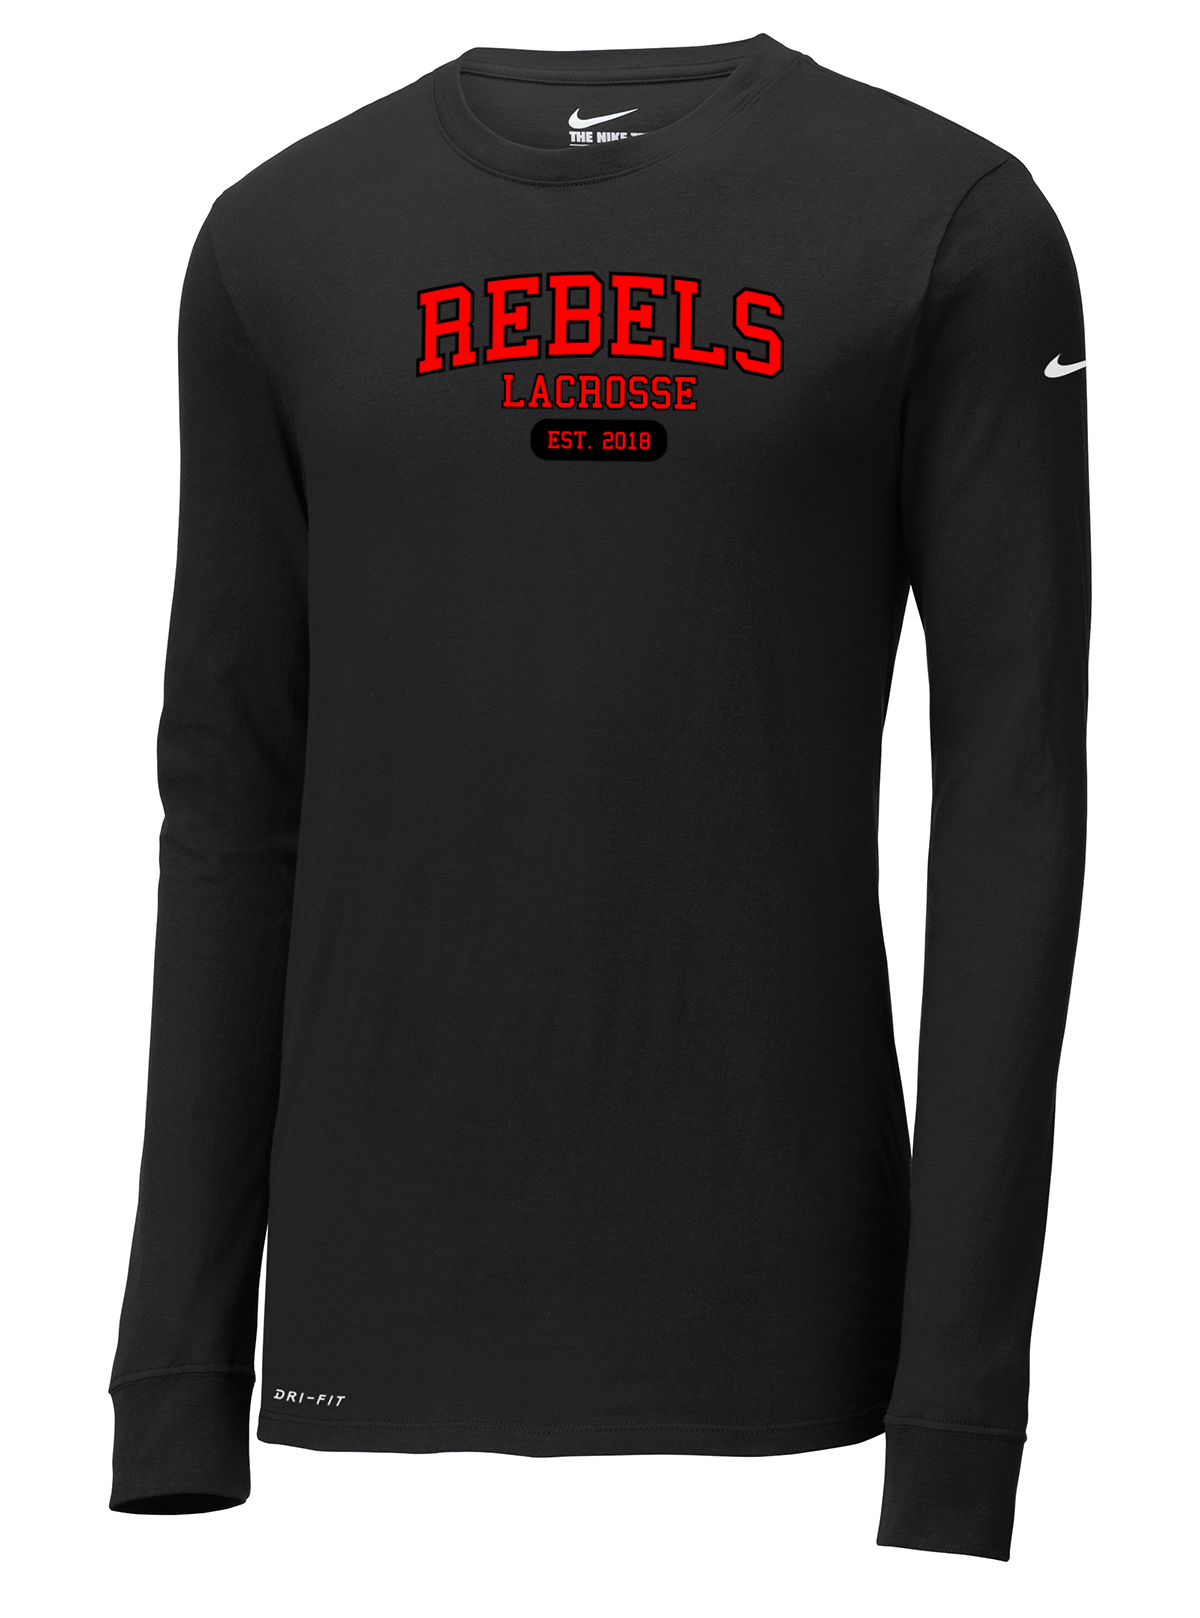 Rebels Lacrosse Nike Dri-FIT Long Sleeve Tee